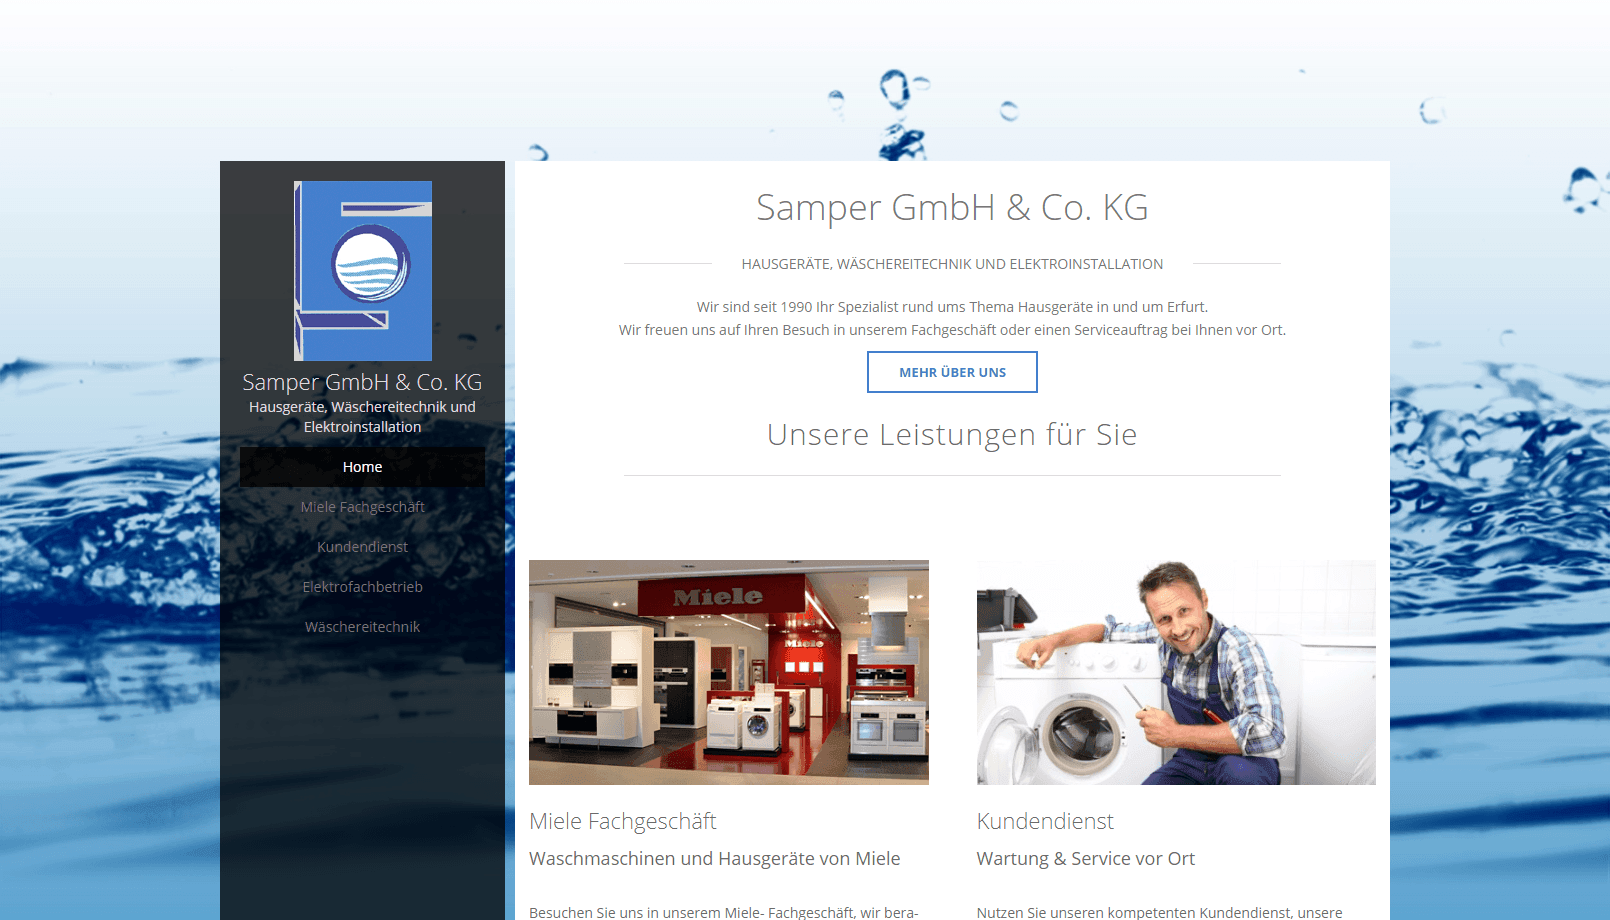 Samper GmbH & Co KG